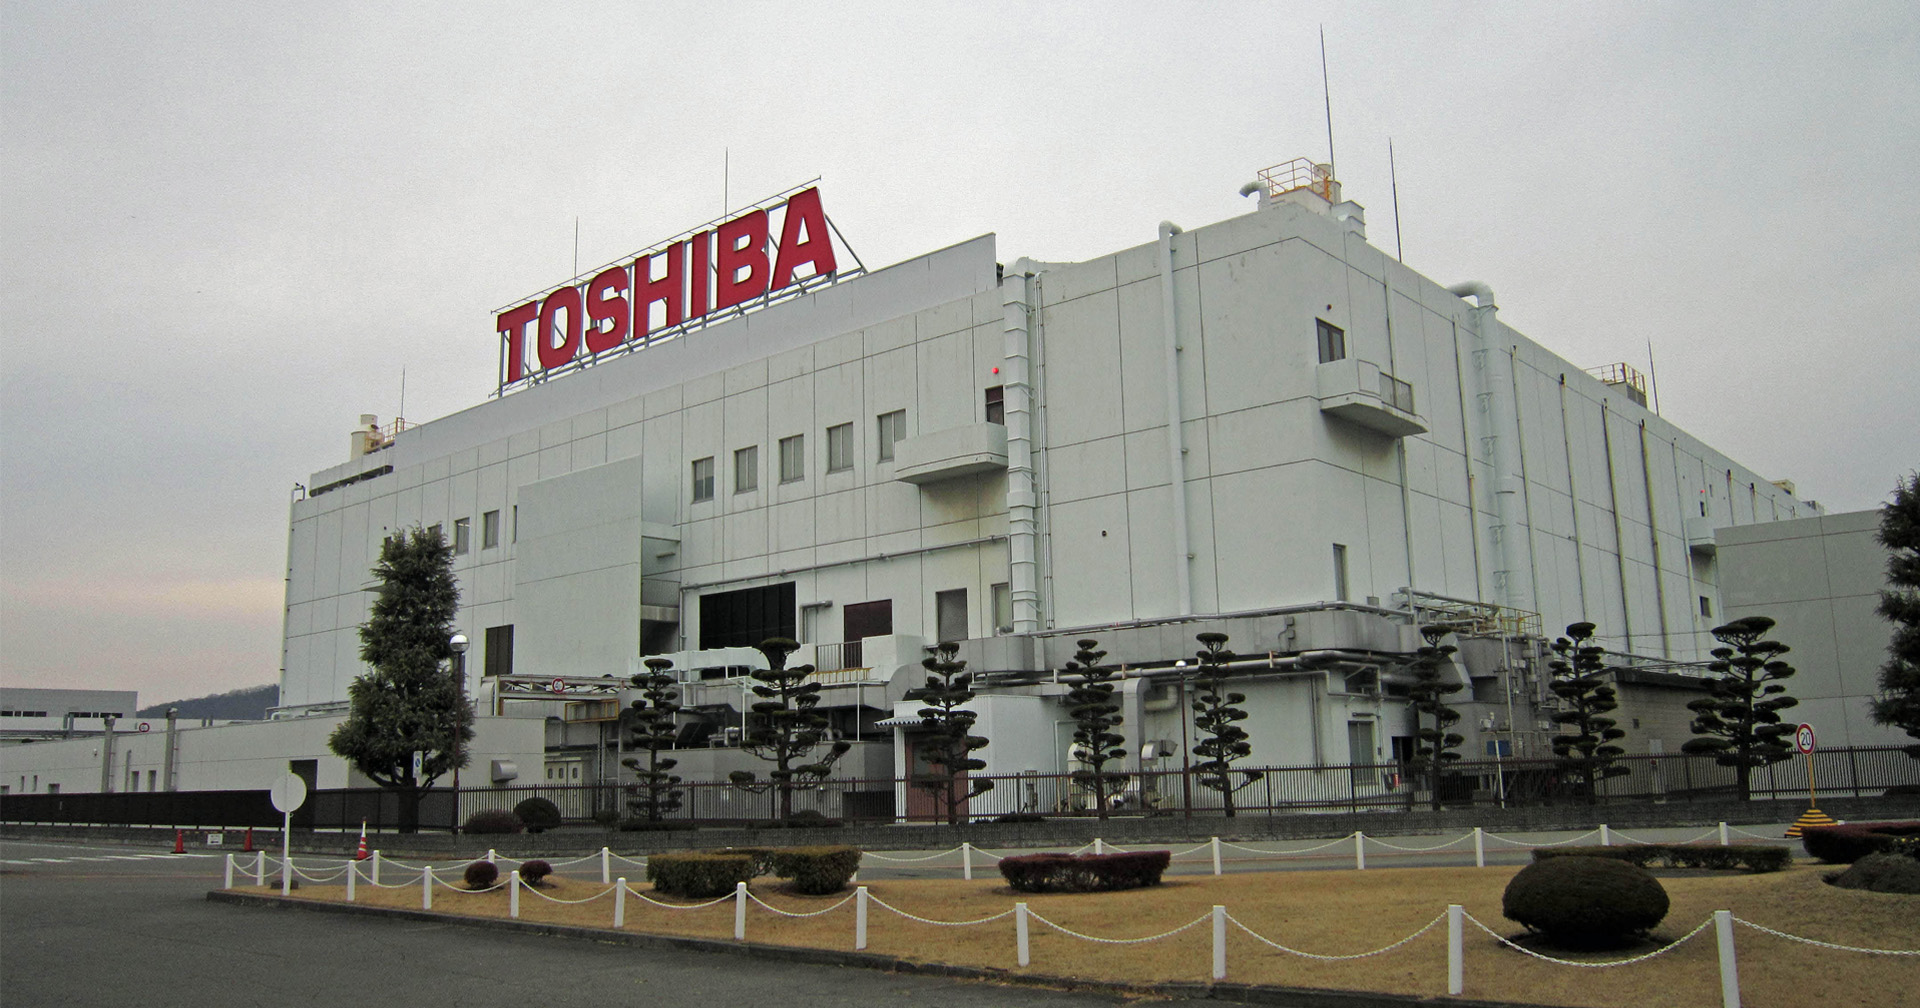 โตชิบา ไทยแลนด์ แจงดีลขายกิจการบริษัทแม่ในญี่ปุ่นไม่กระทบธุรกิจไทย